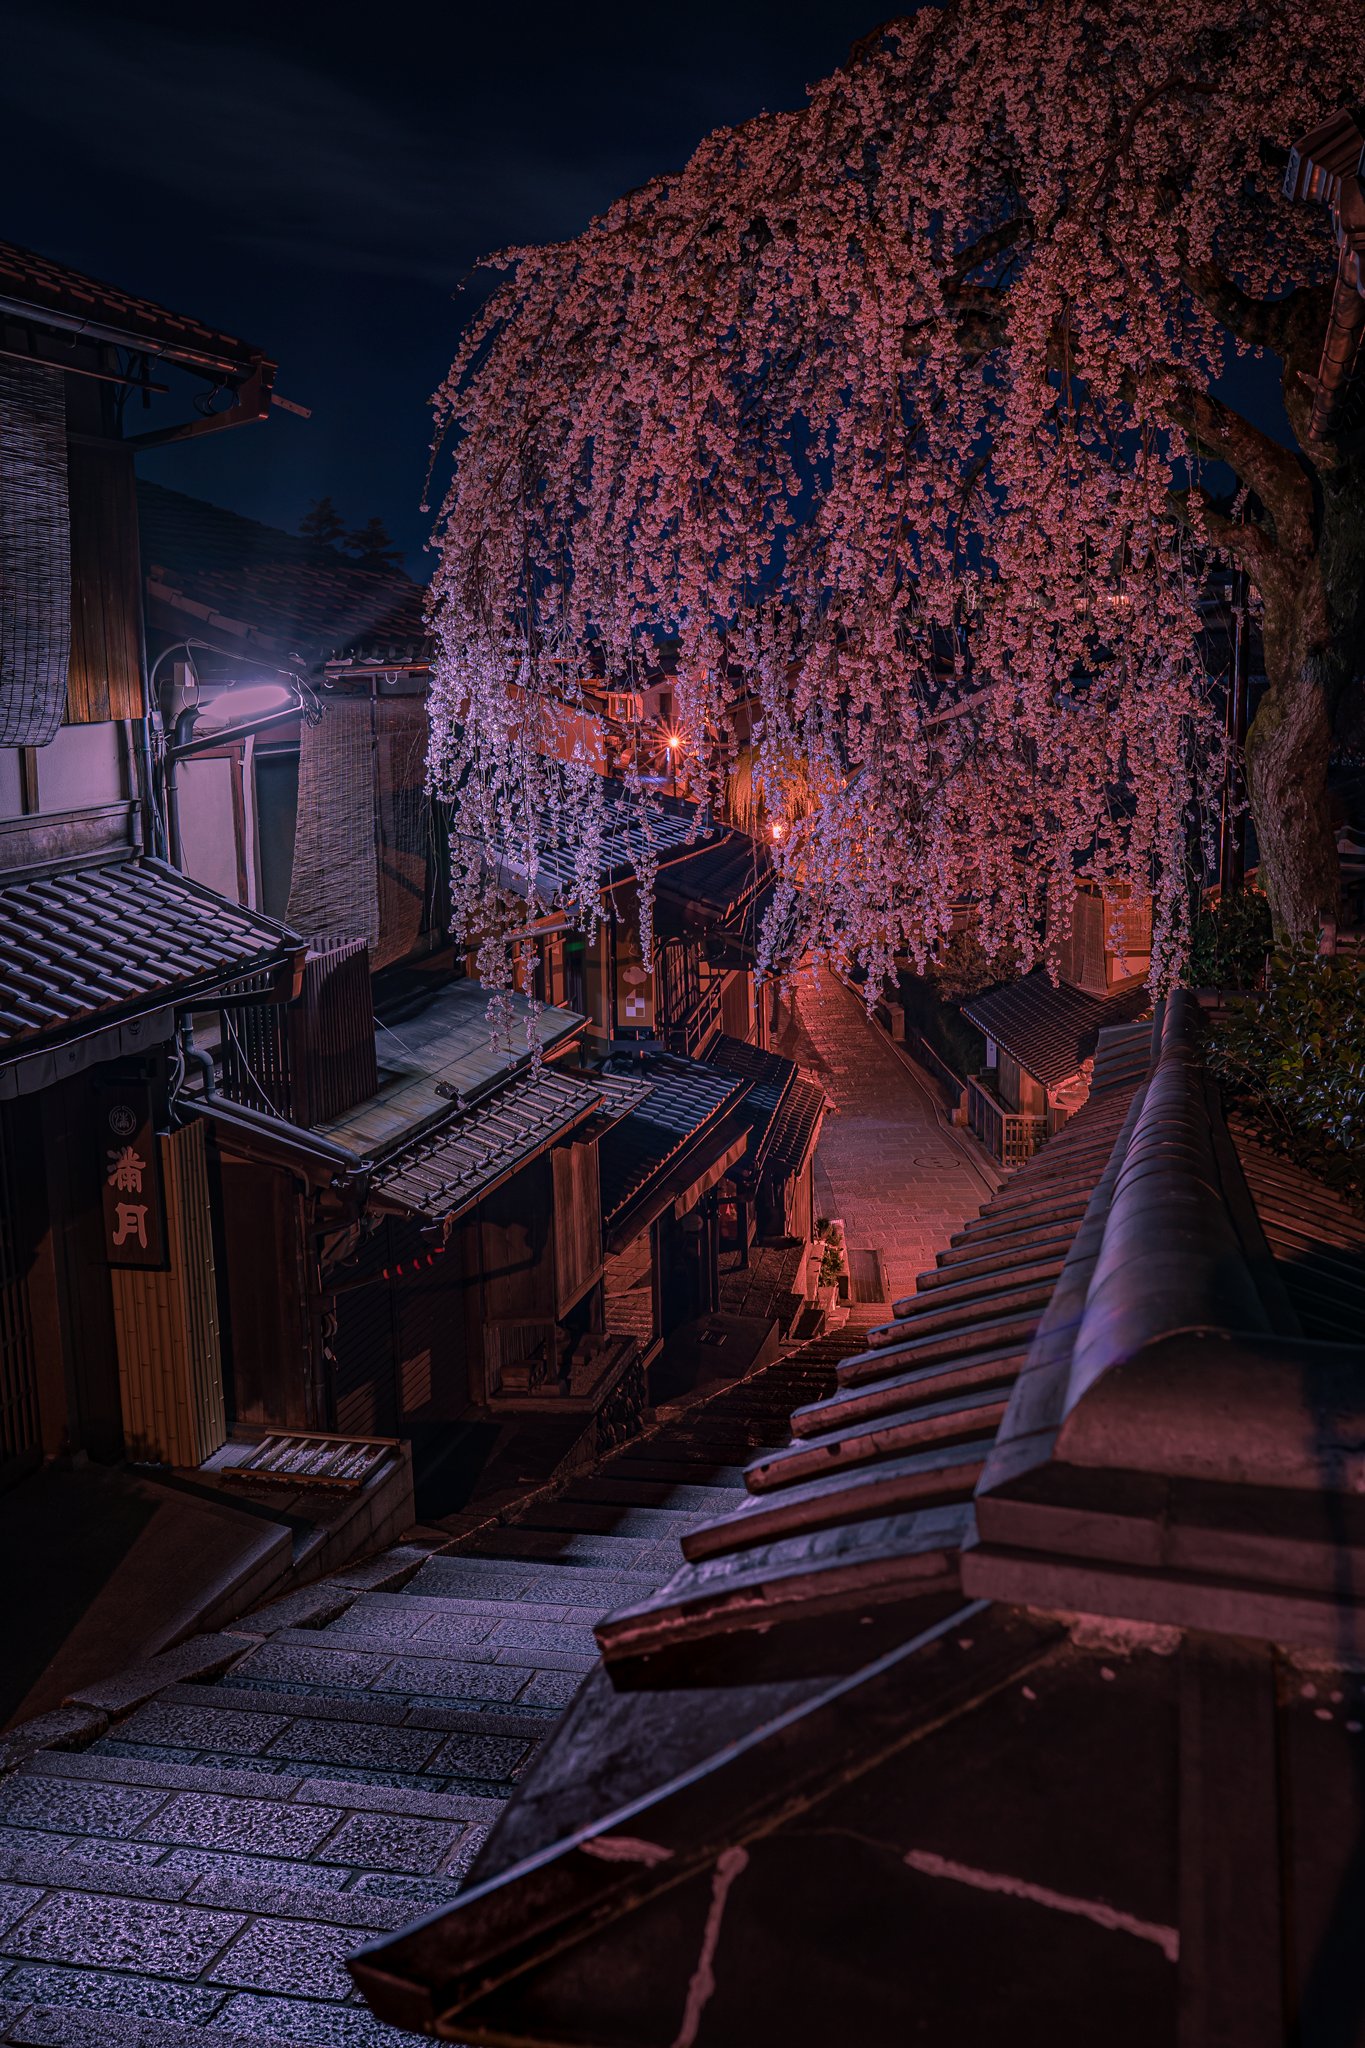 前山 京都で見る夜桜の美しさ T Co Qizb9bsqlm Twitter